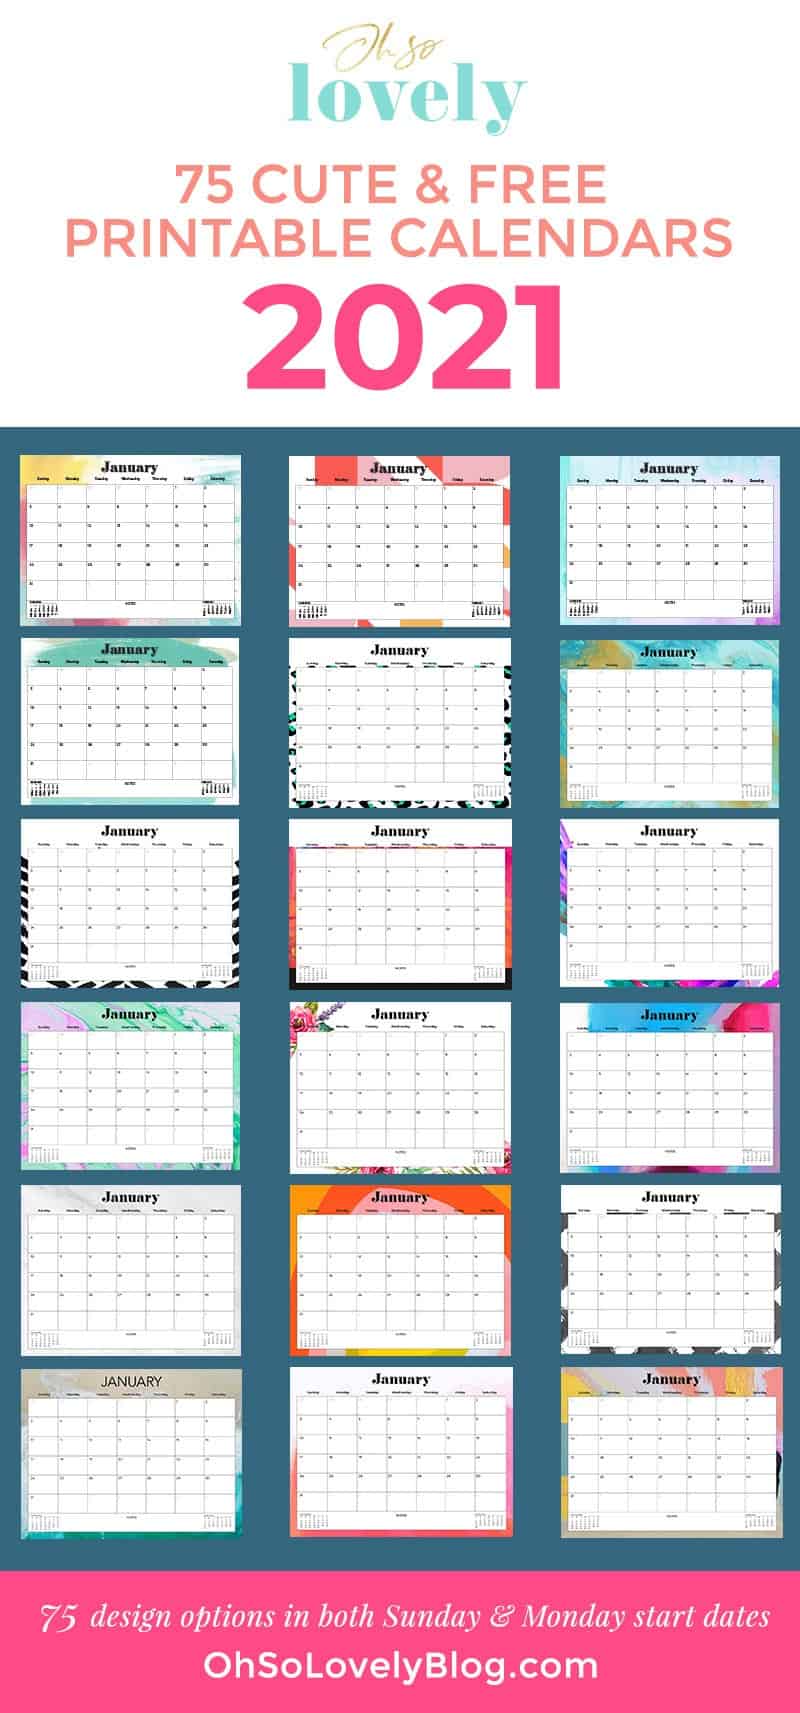 OhSoLovelyBlog-FREE-2021-Printable-Calendars